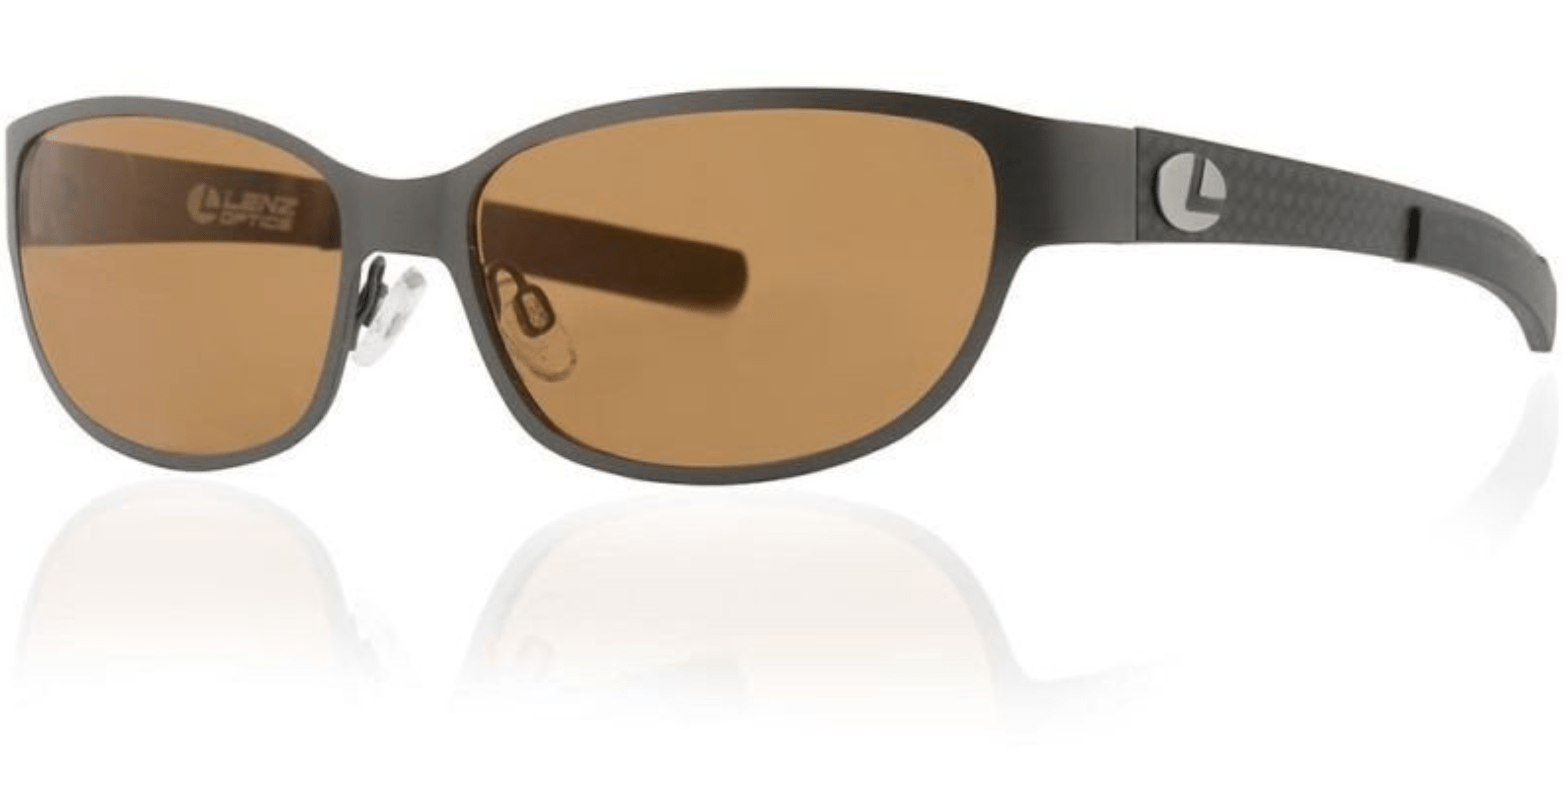 Lenz Optics Sunglasses Lenz Optics Cascapedia Titan/Carbon Sunglasses